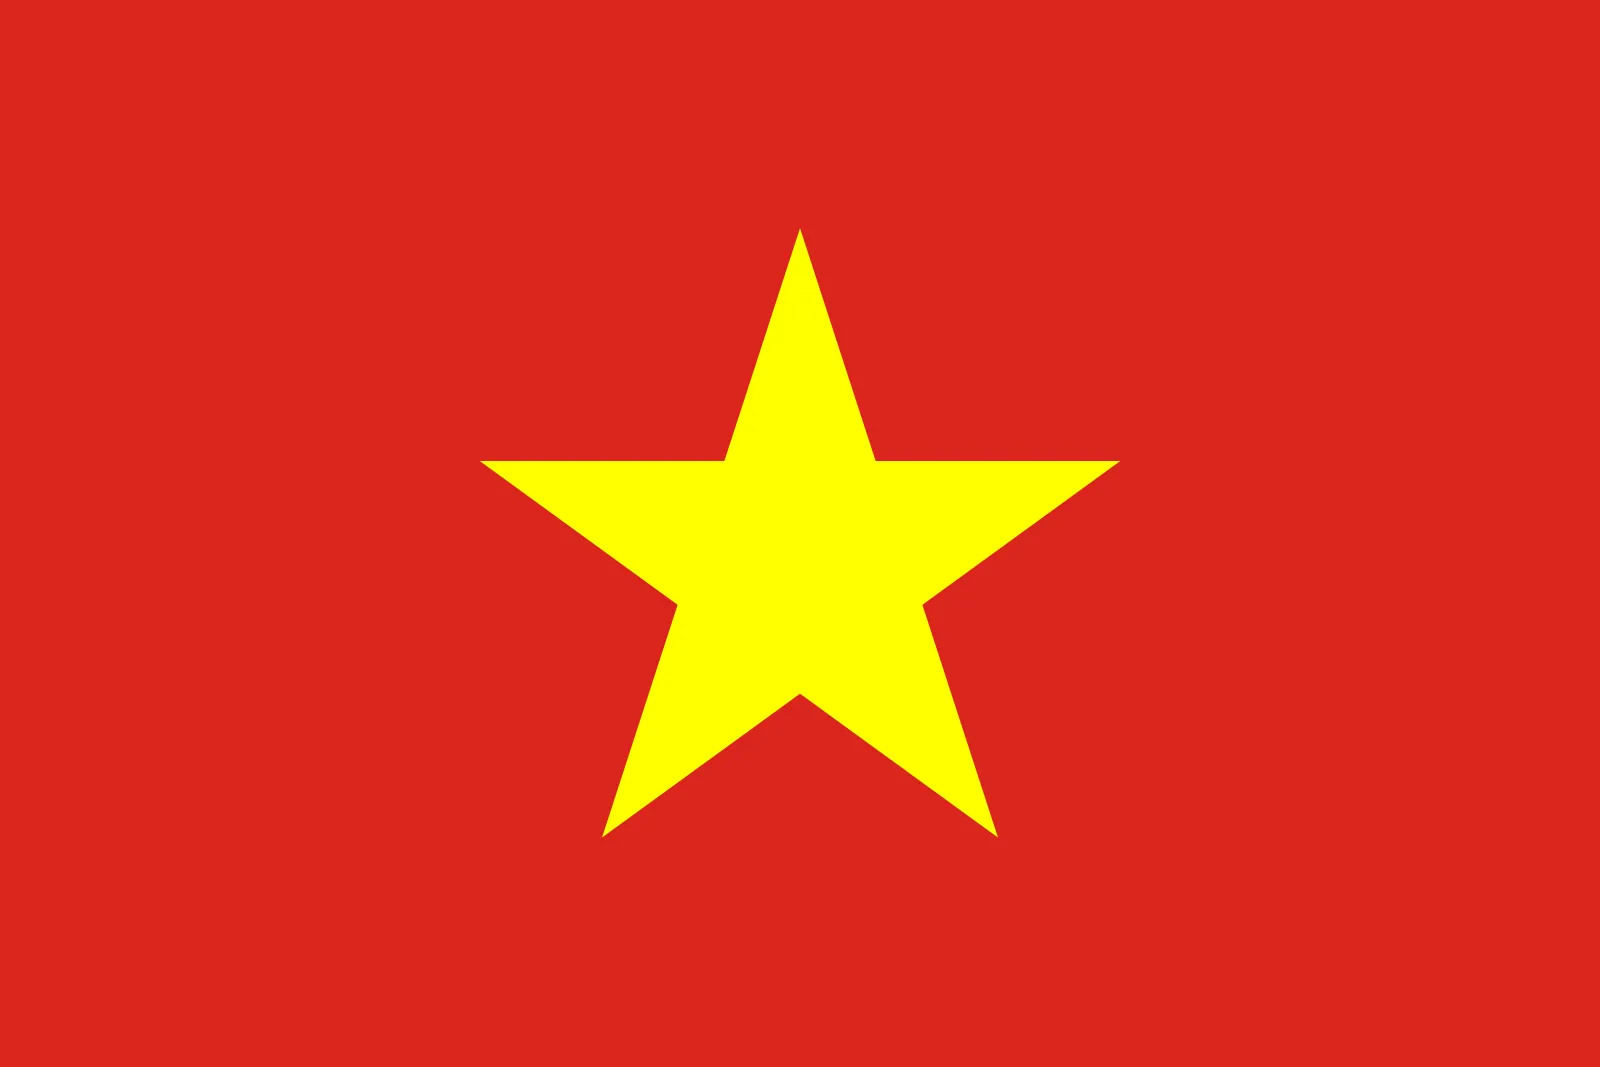 Vietnam Visa Medical
• Vietnam embassy-approved medicals
• Fast turnaround of results
• Great value